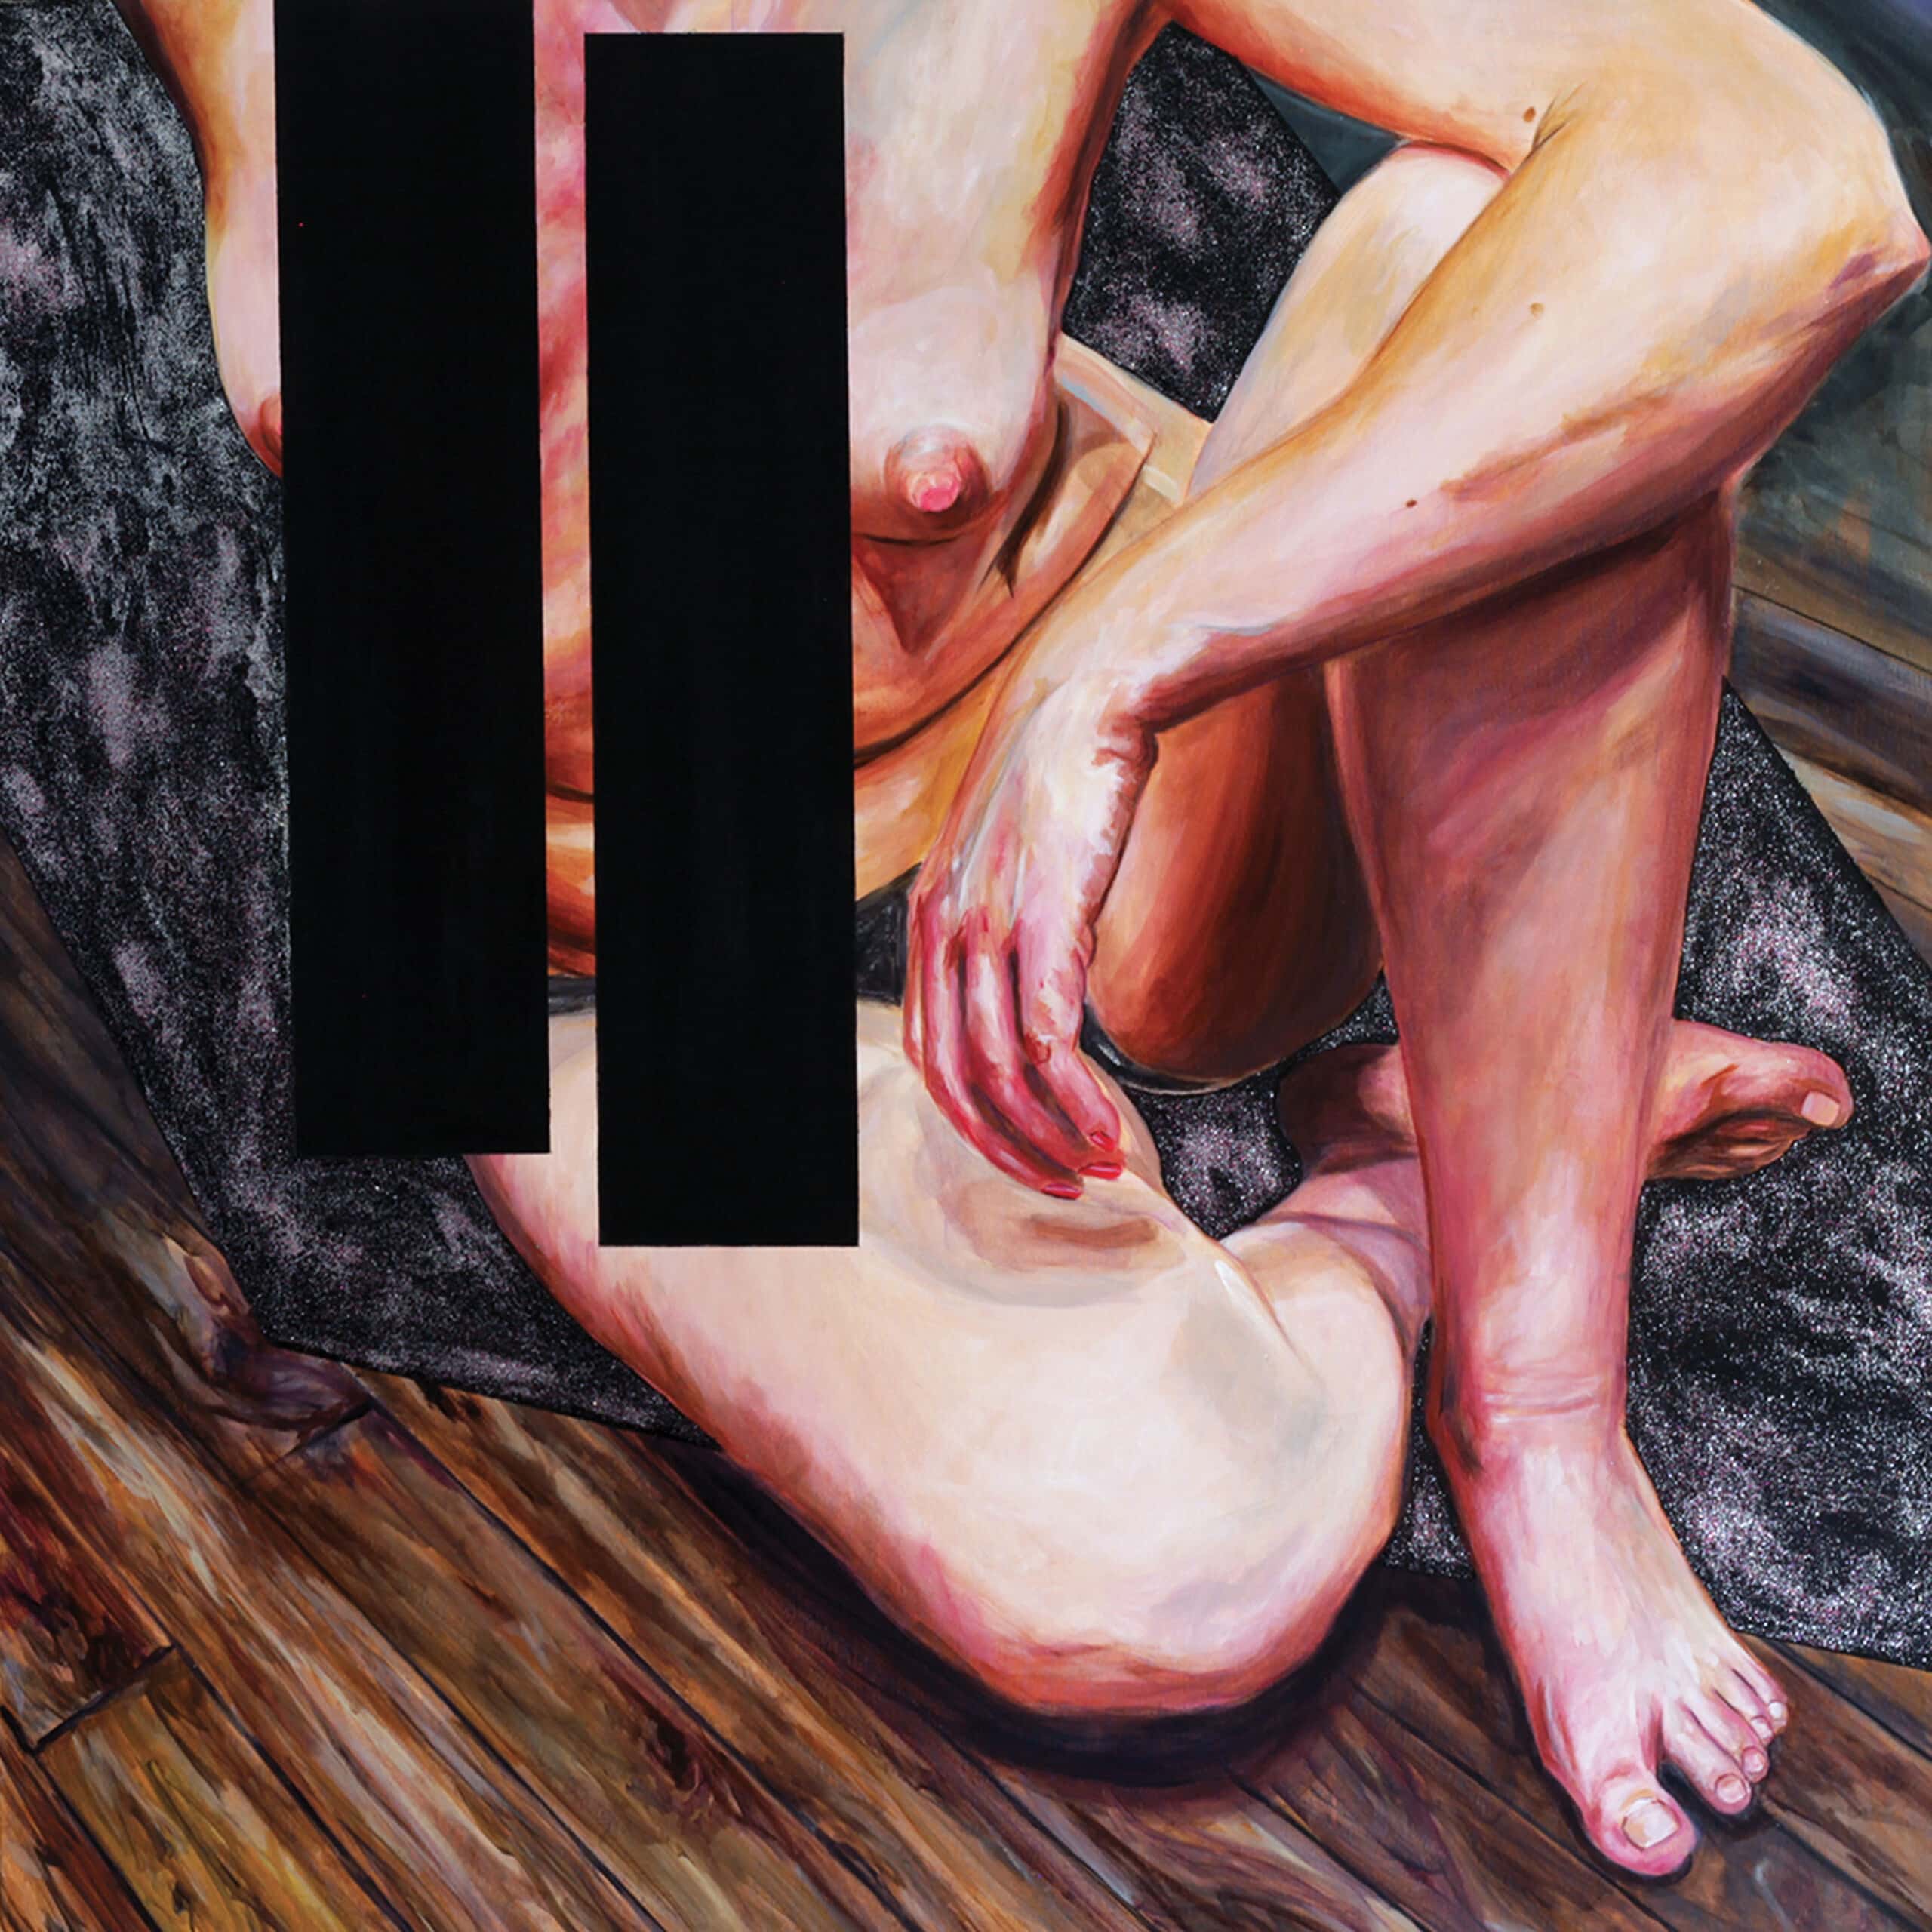 Corps de jeune femme et bandes noires, 100x100 cm, huile et paillettes sur toile, 2018 